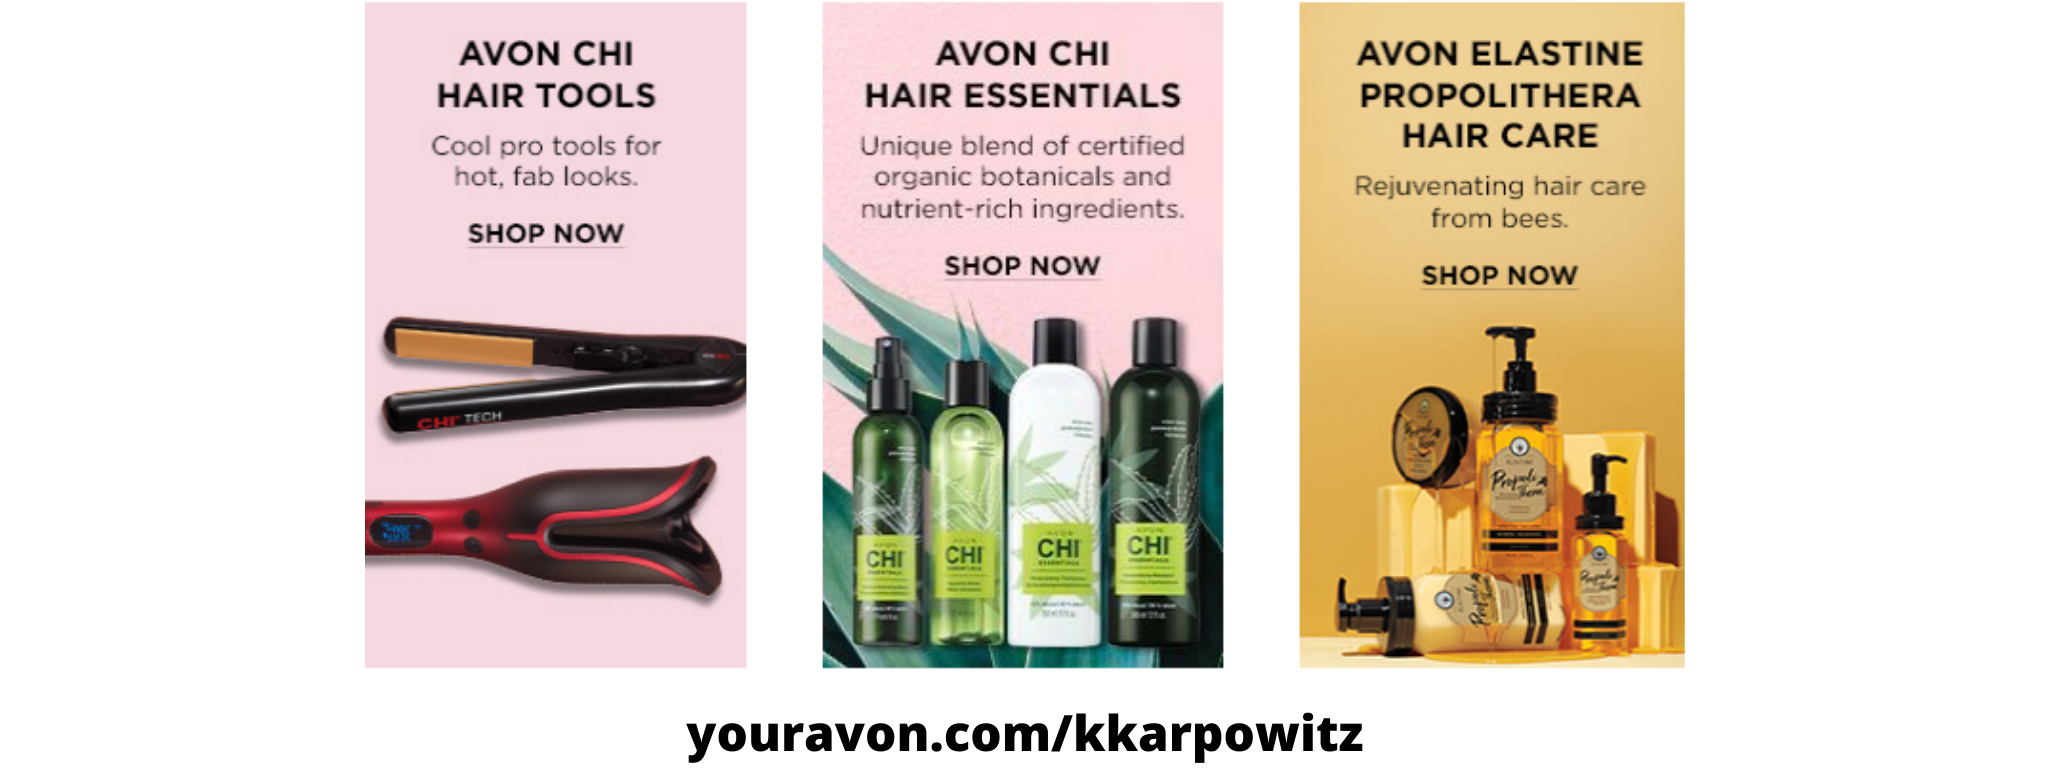 Buy Avon Online-Hair Care